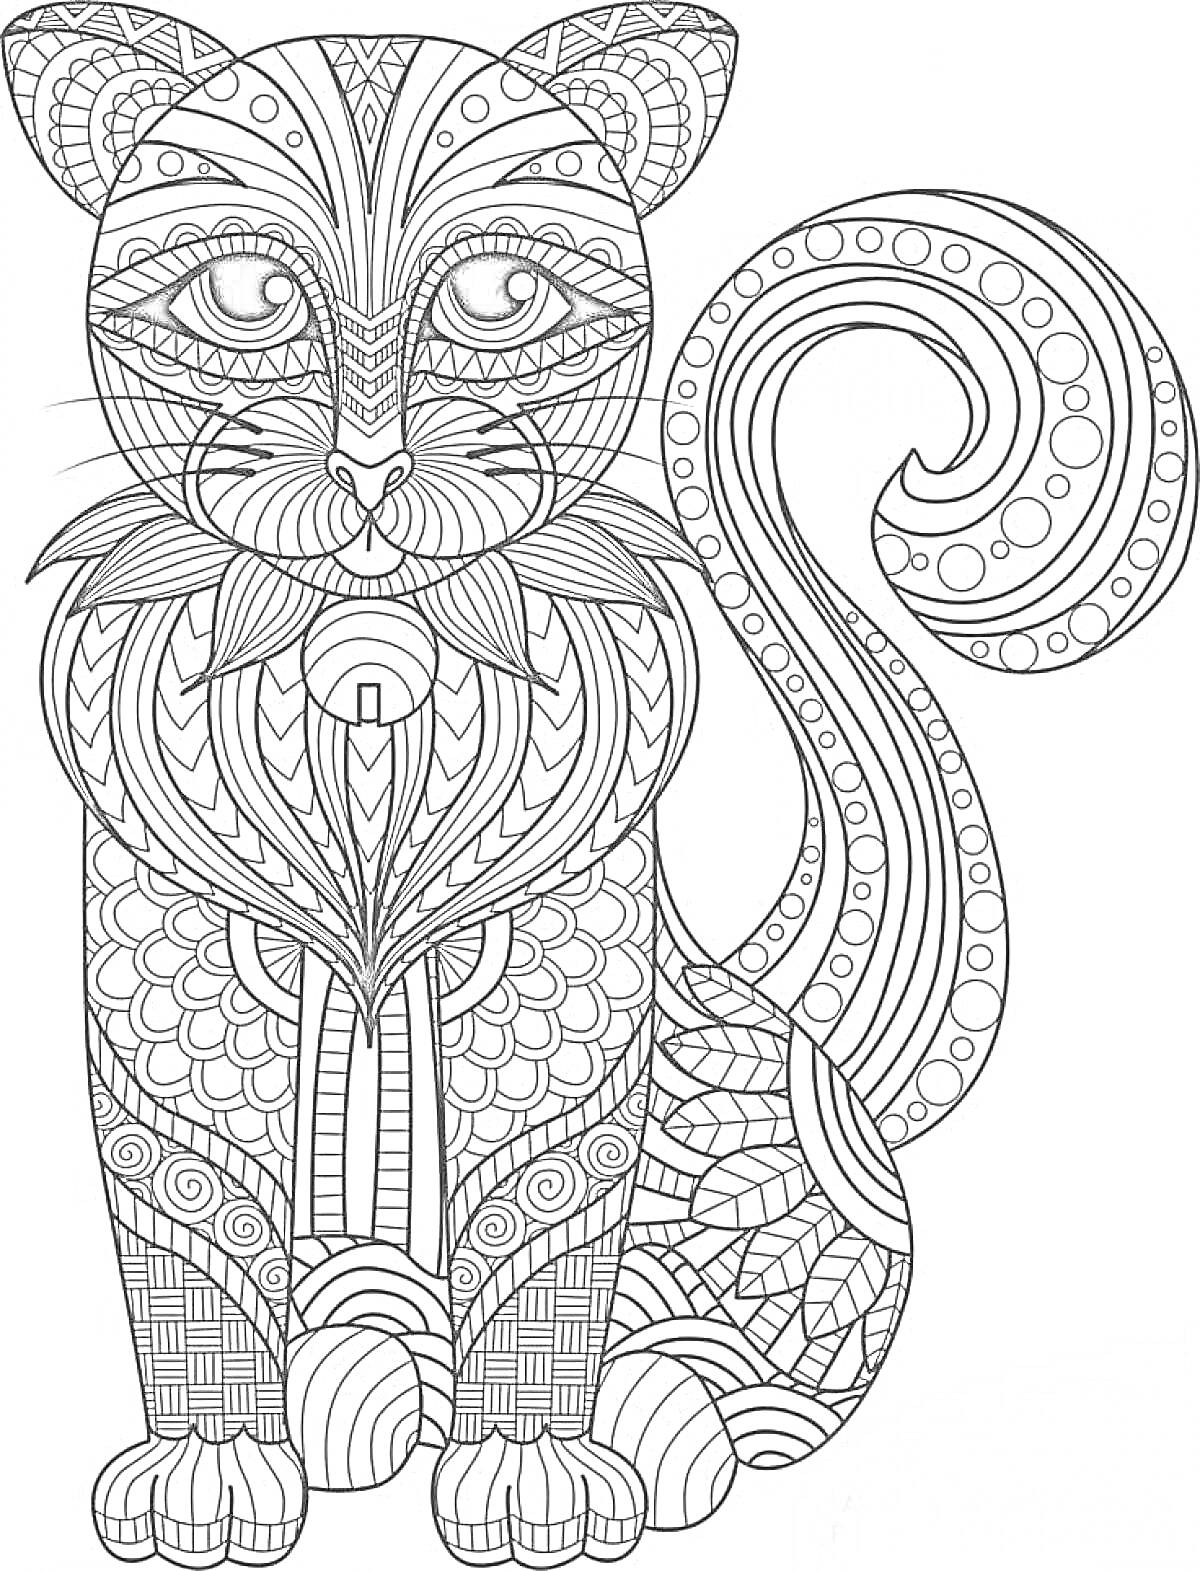 Раскраска Кот с узорами в стиле антистресс